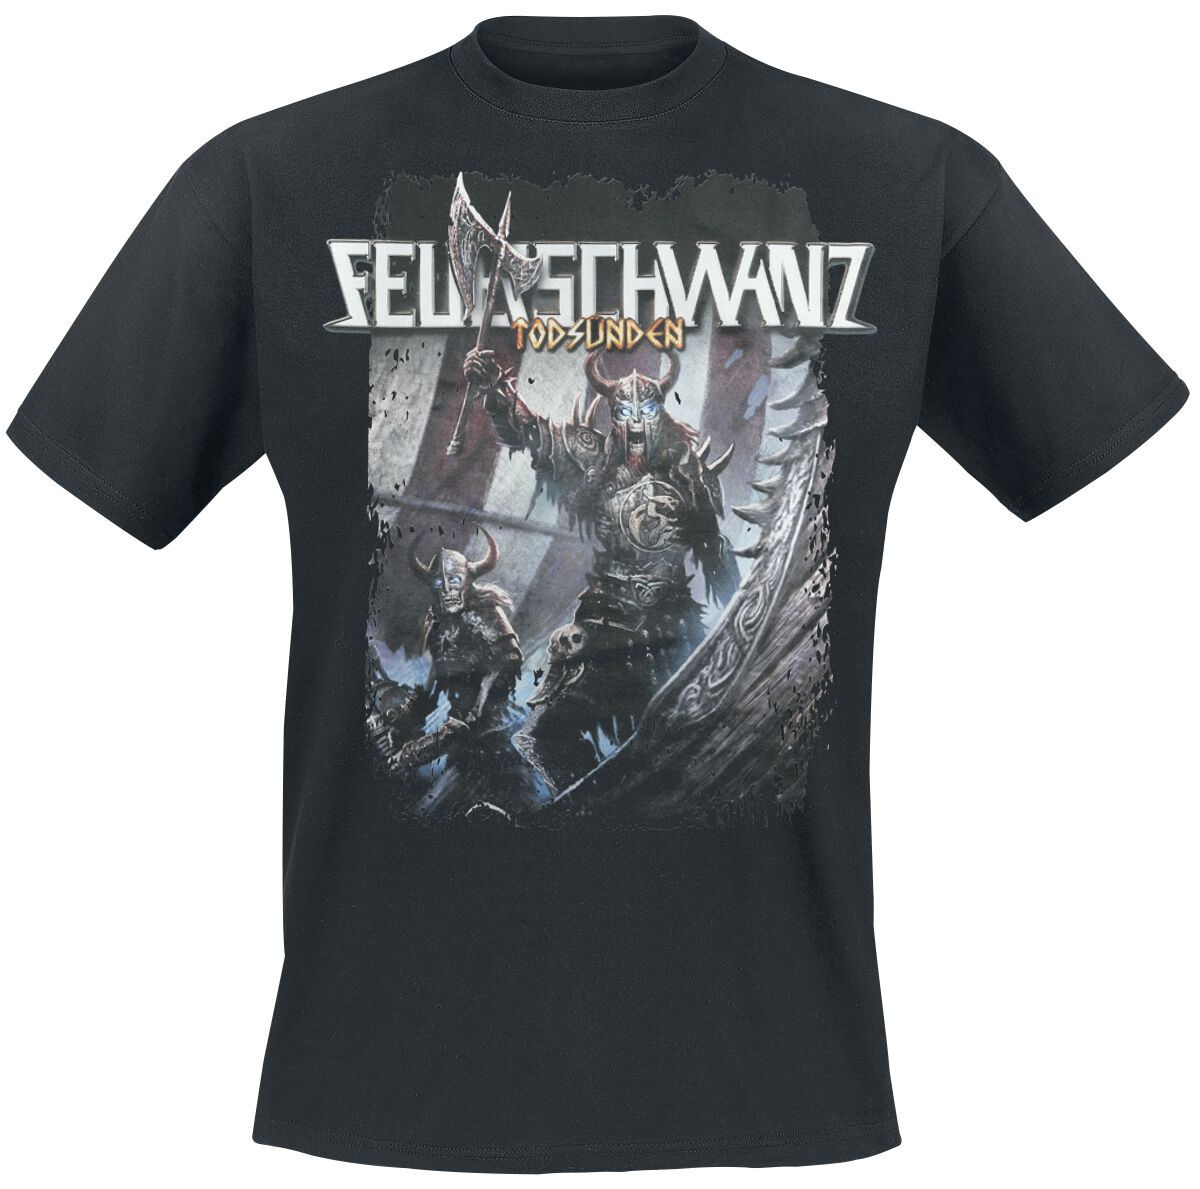 Feuerschwanz T-Shirt - Todsünden Viking - S bis L - für Männer - Größe M - schwarz  - EMP exklusives Merchandise!